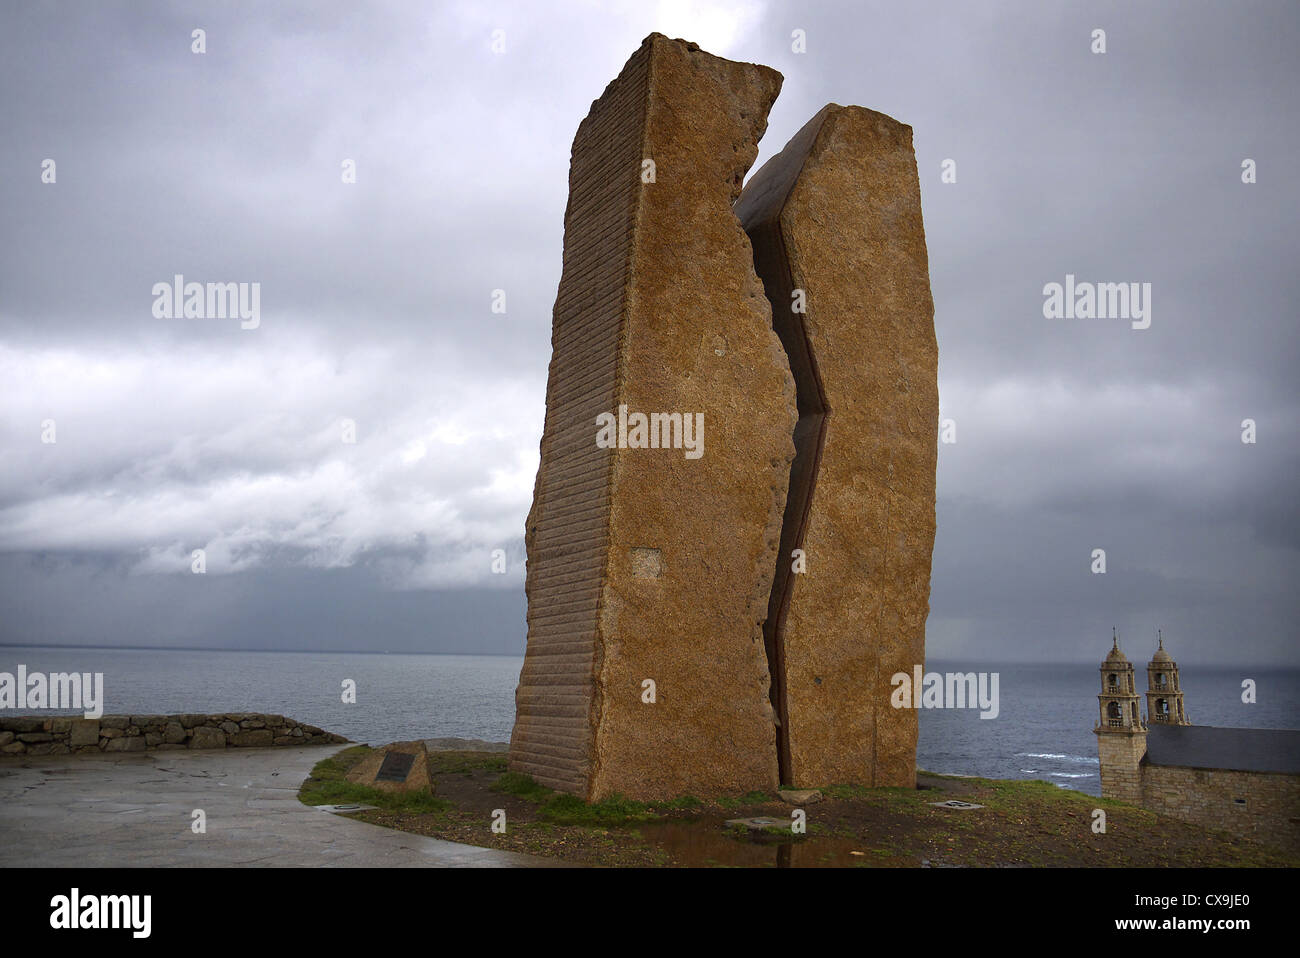 Monumento a la marea negra del Prestige en Muxia, Galicia, España. Foto de stock